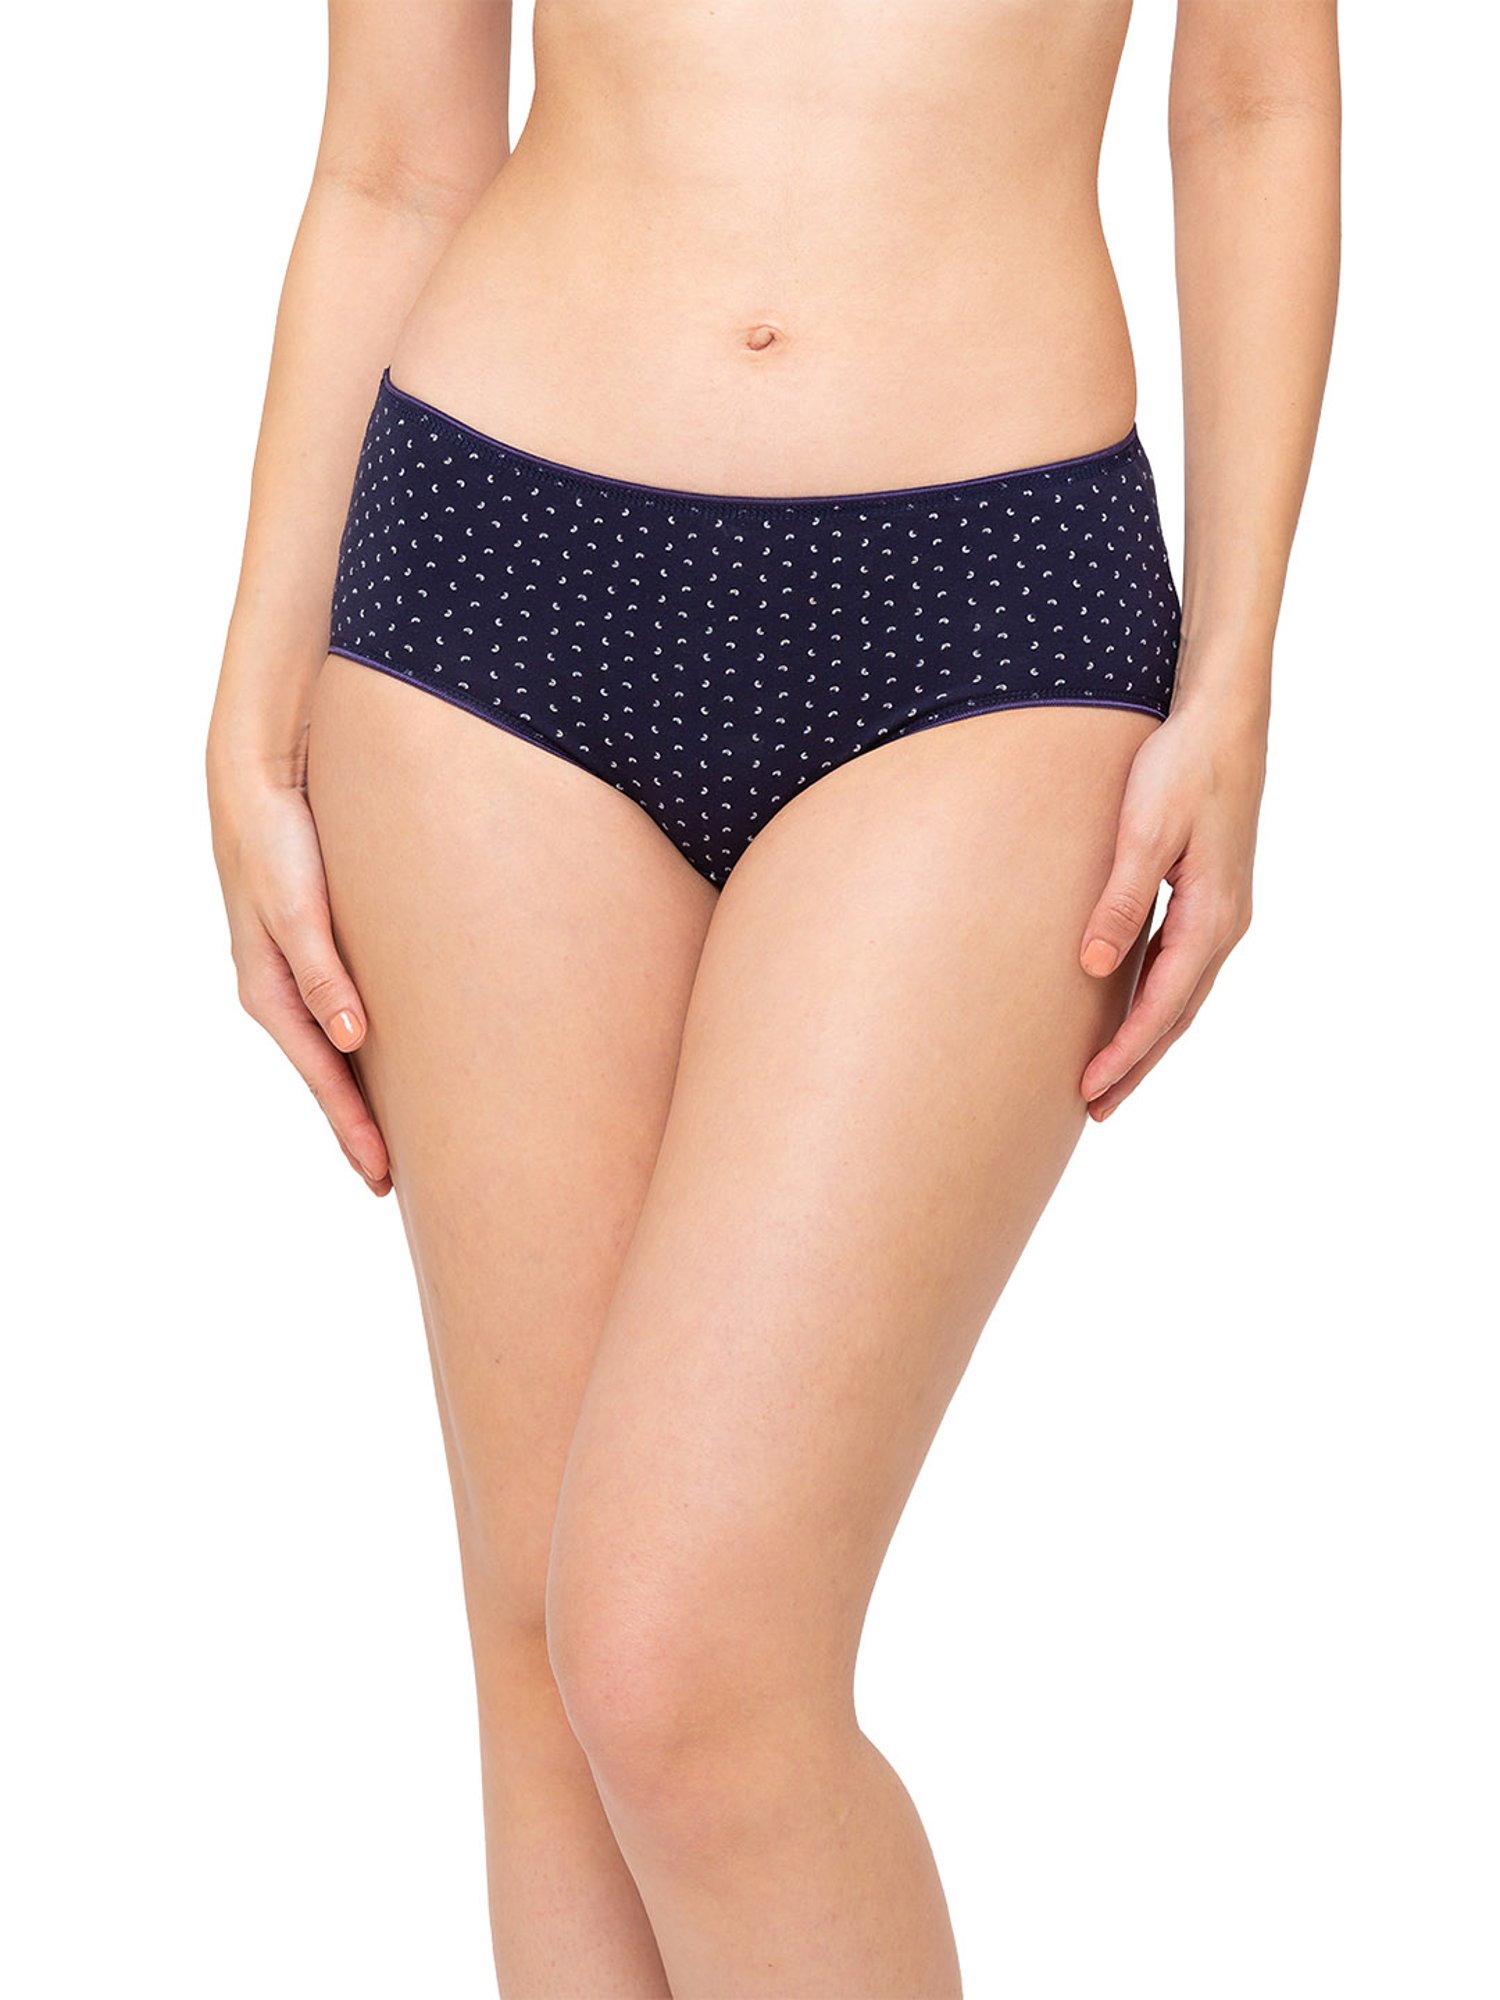 Buy Assorted Panties for Women by JULIET Online